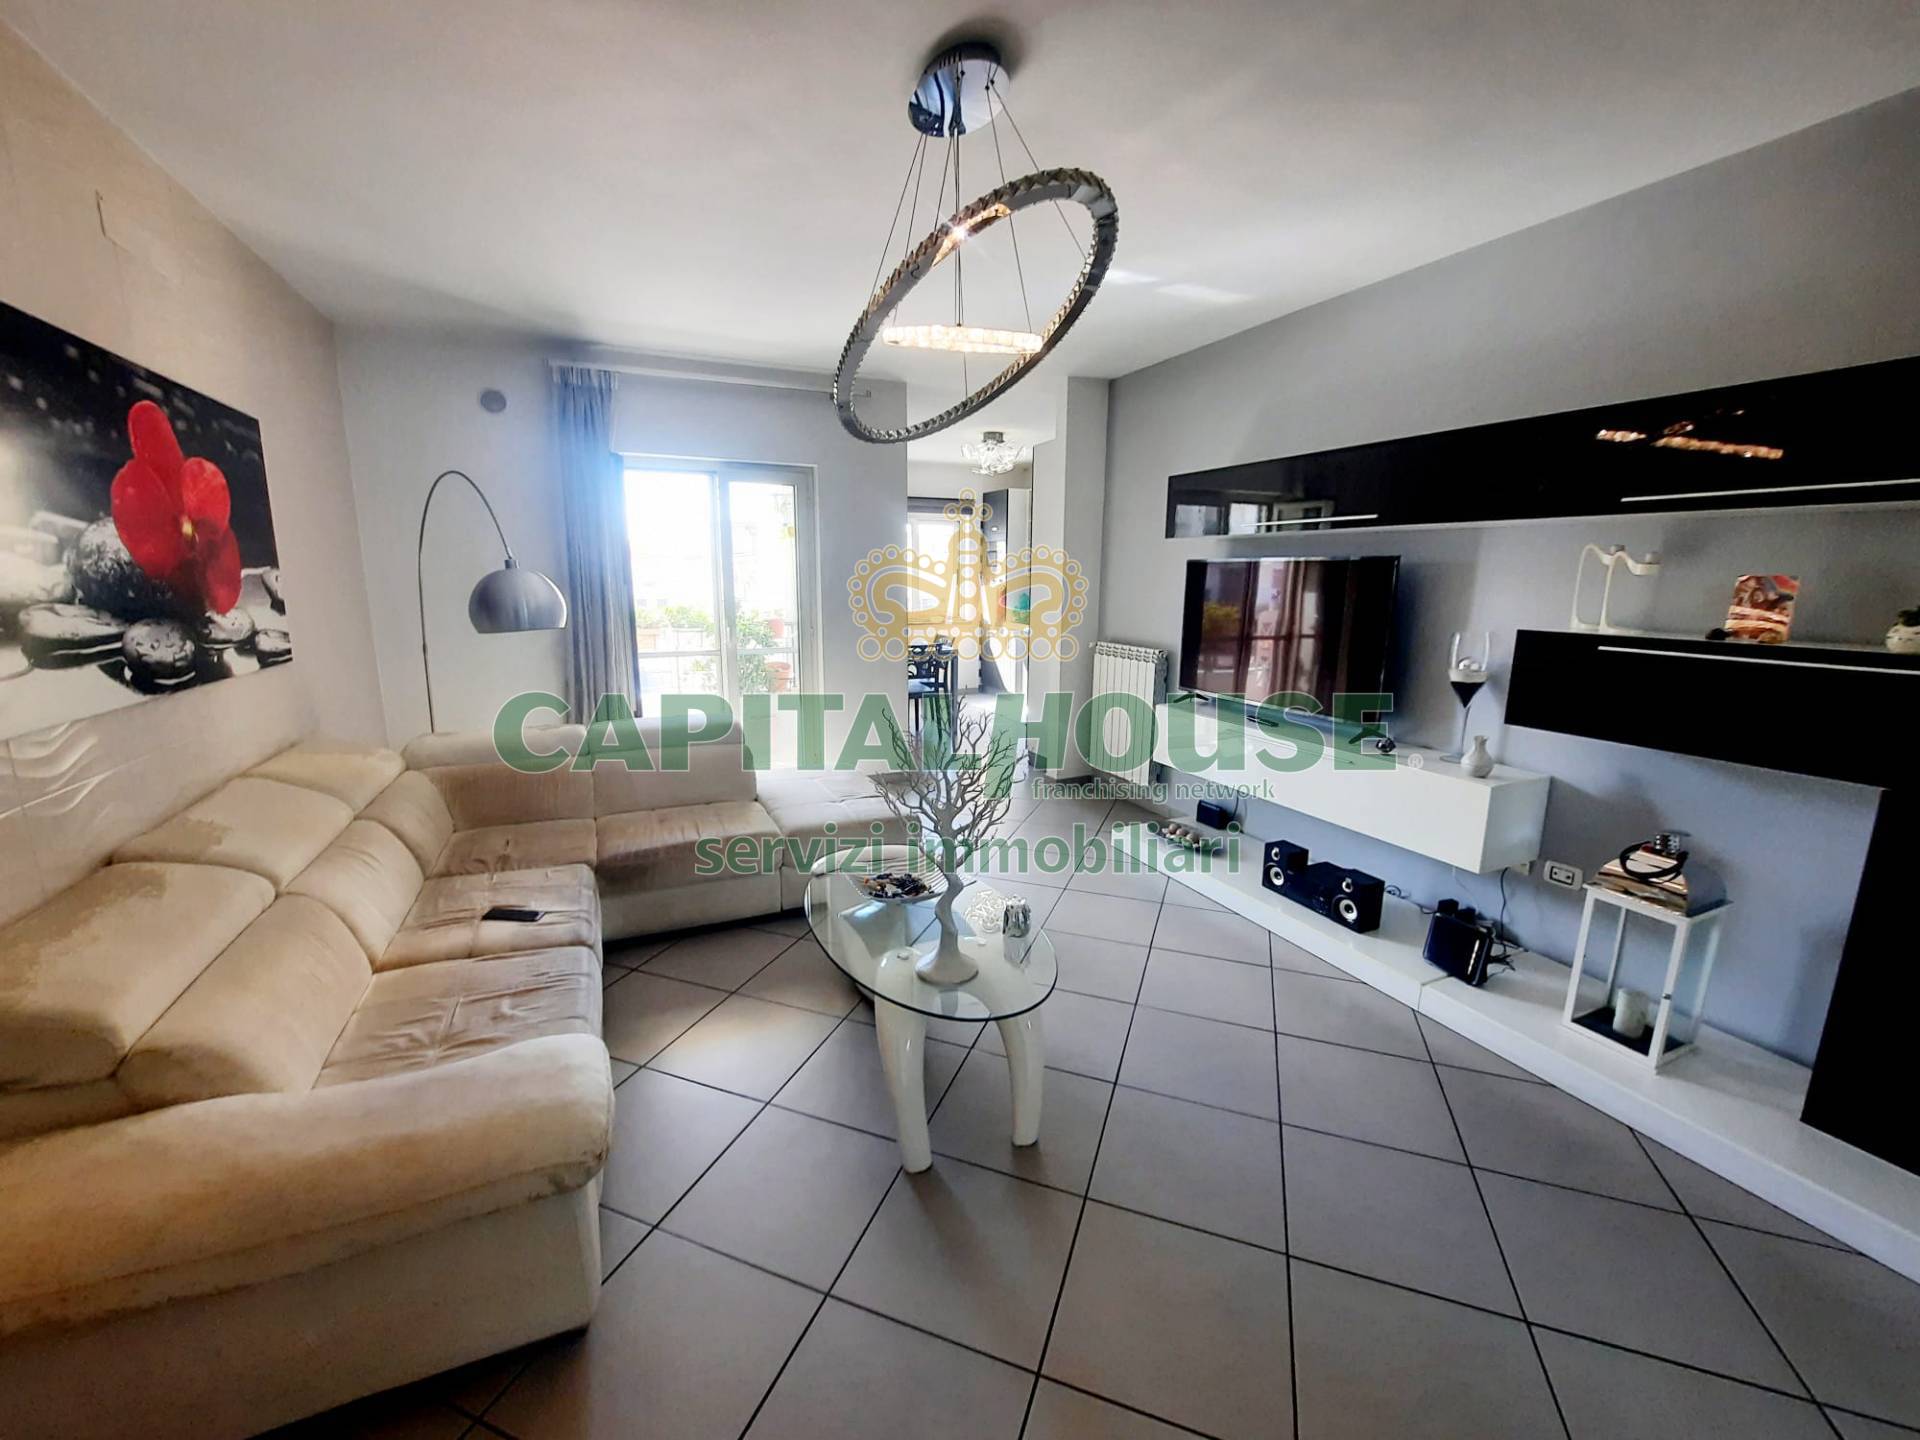 Appartamento in vendita a Mariglianella, 3 locali, prezzo € 170.000 | PortaleAgenzieImmobiliari.it